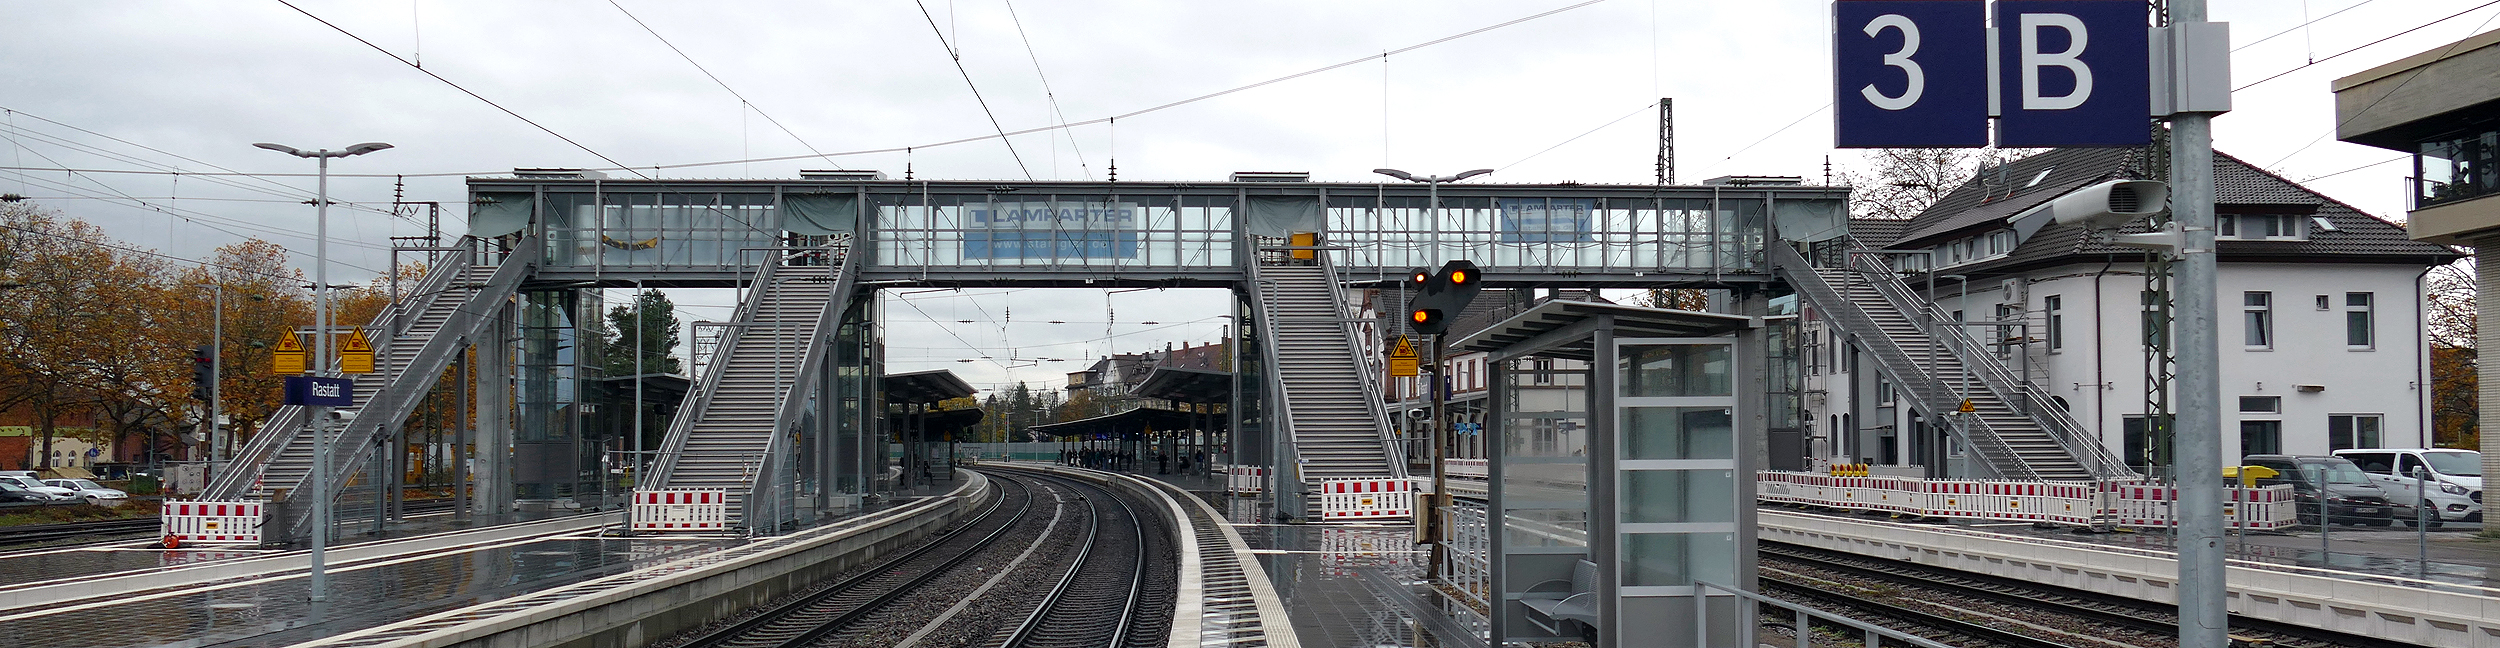 Fußgängersteg über den Gleisen am Bahnhof in Rastatt